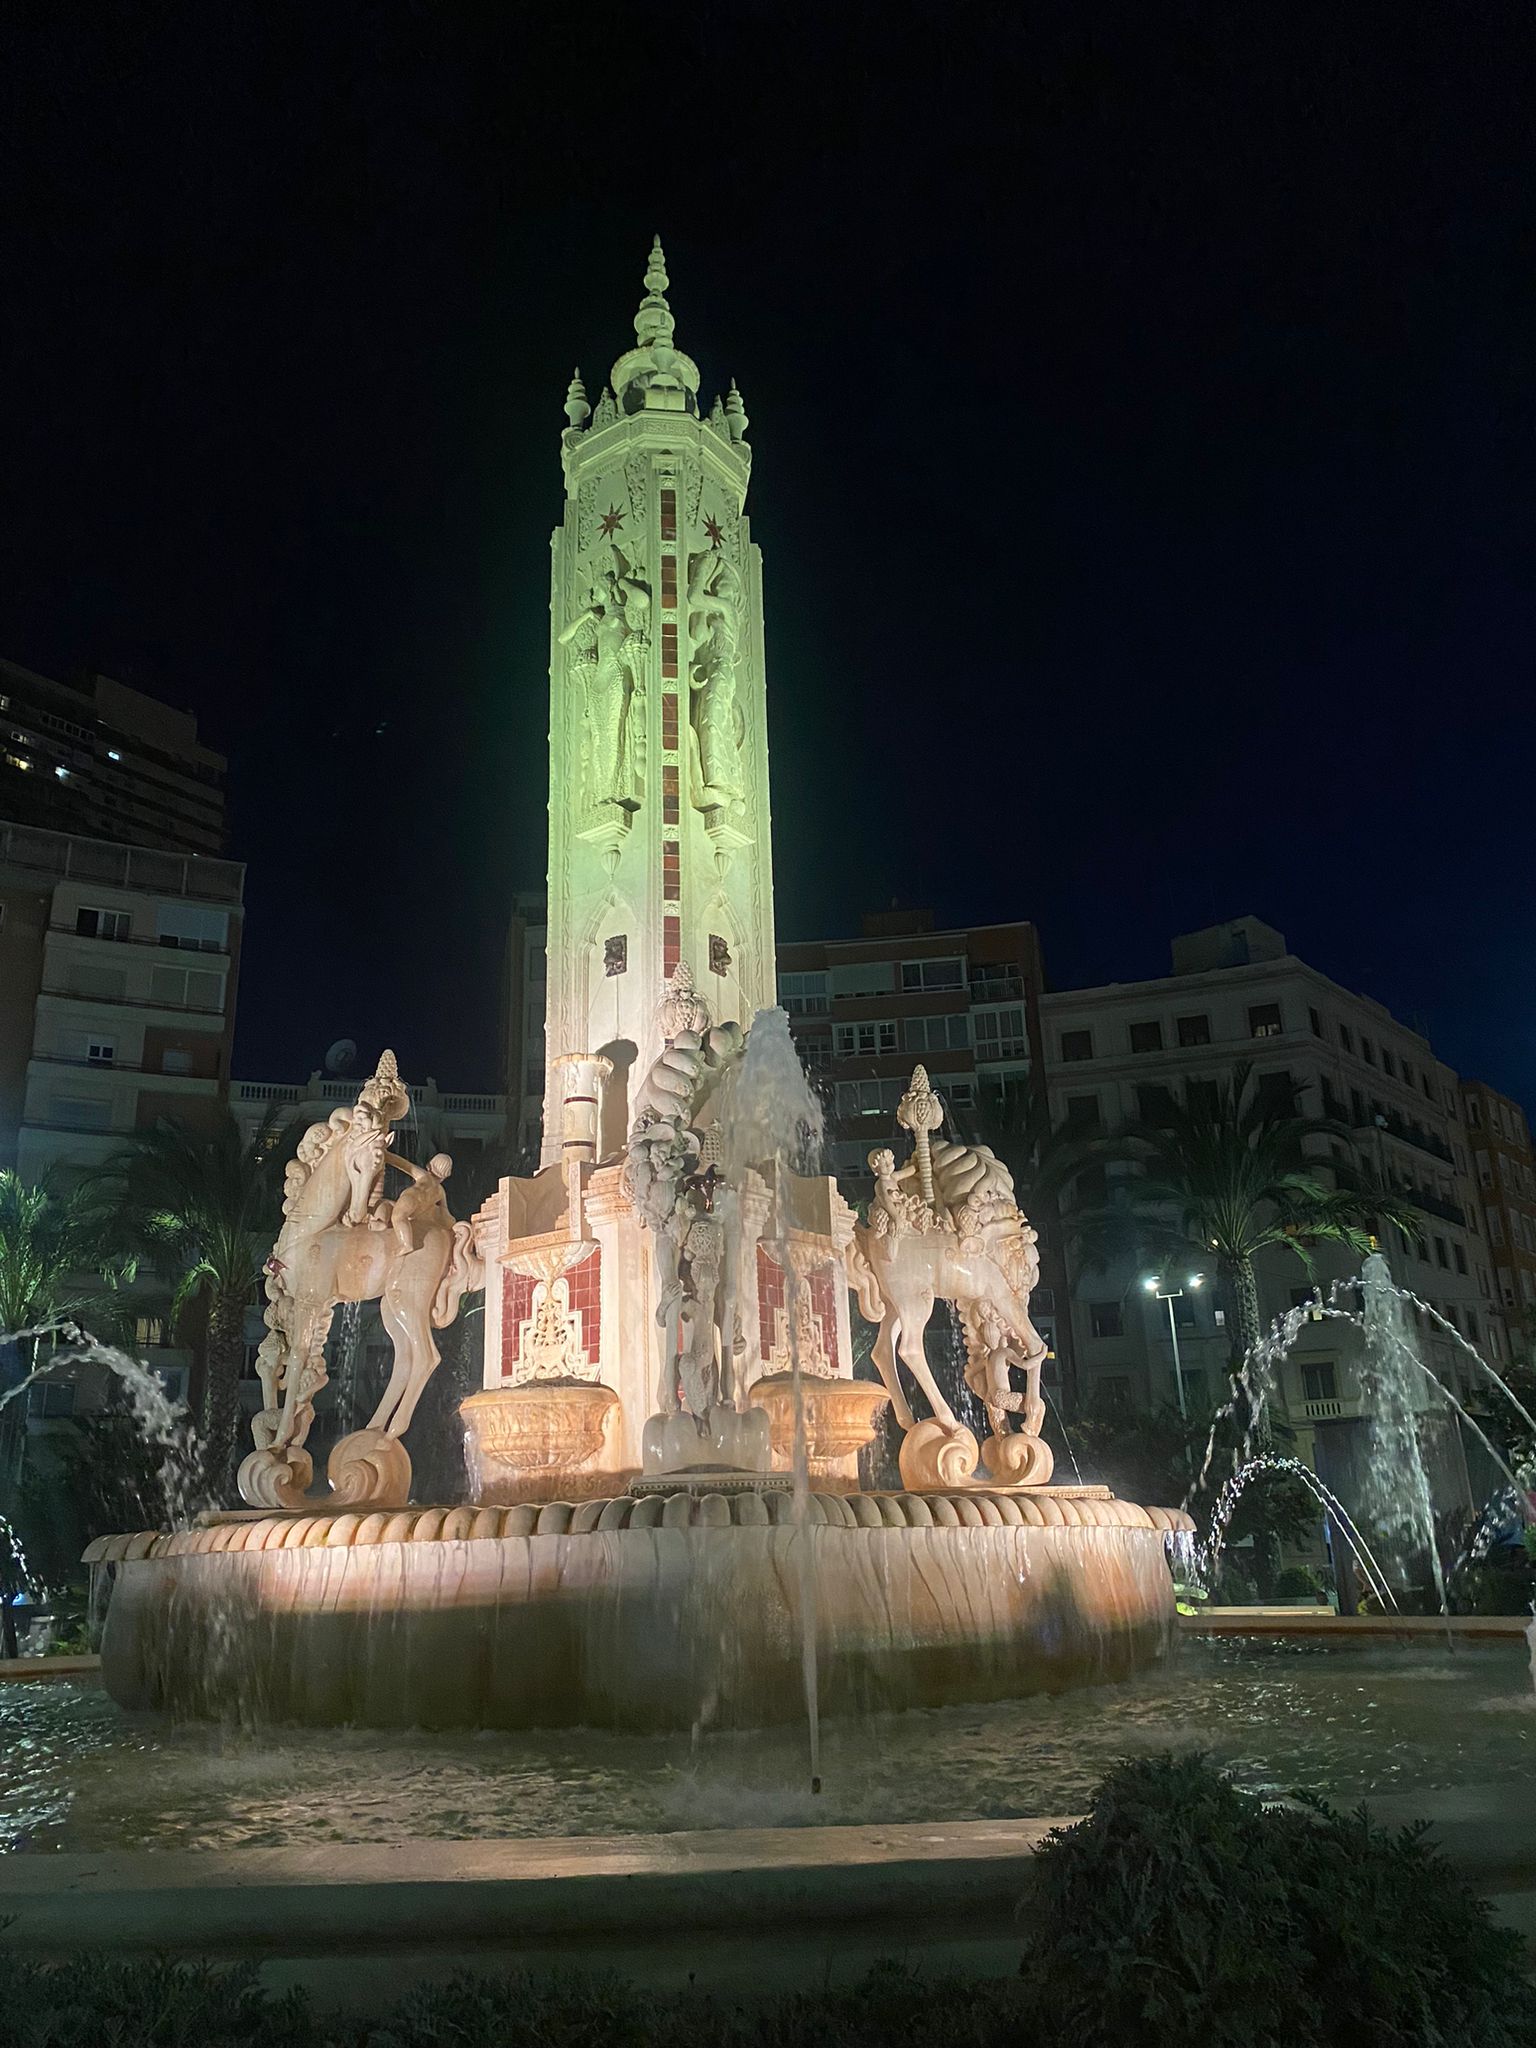 Imagen secundaria 2 - Espacios públicos de la provincia de Alicante iluminados con los colores que simbolizan el duelo perinatal.